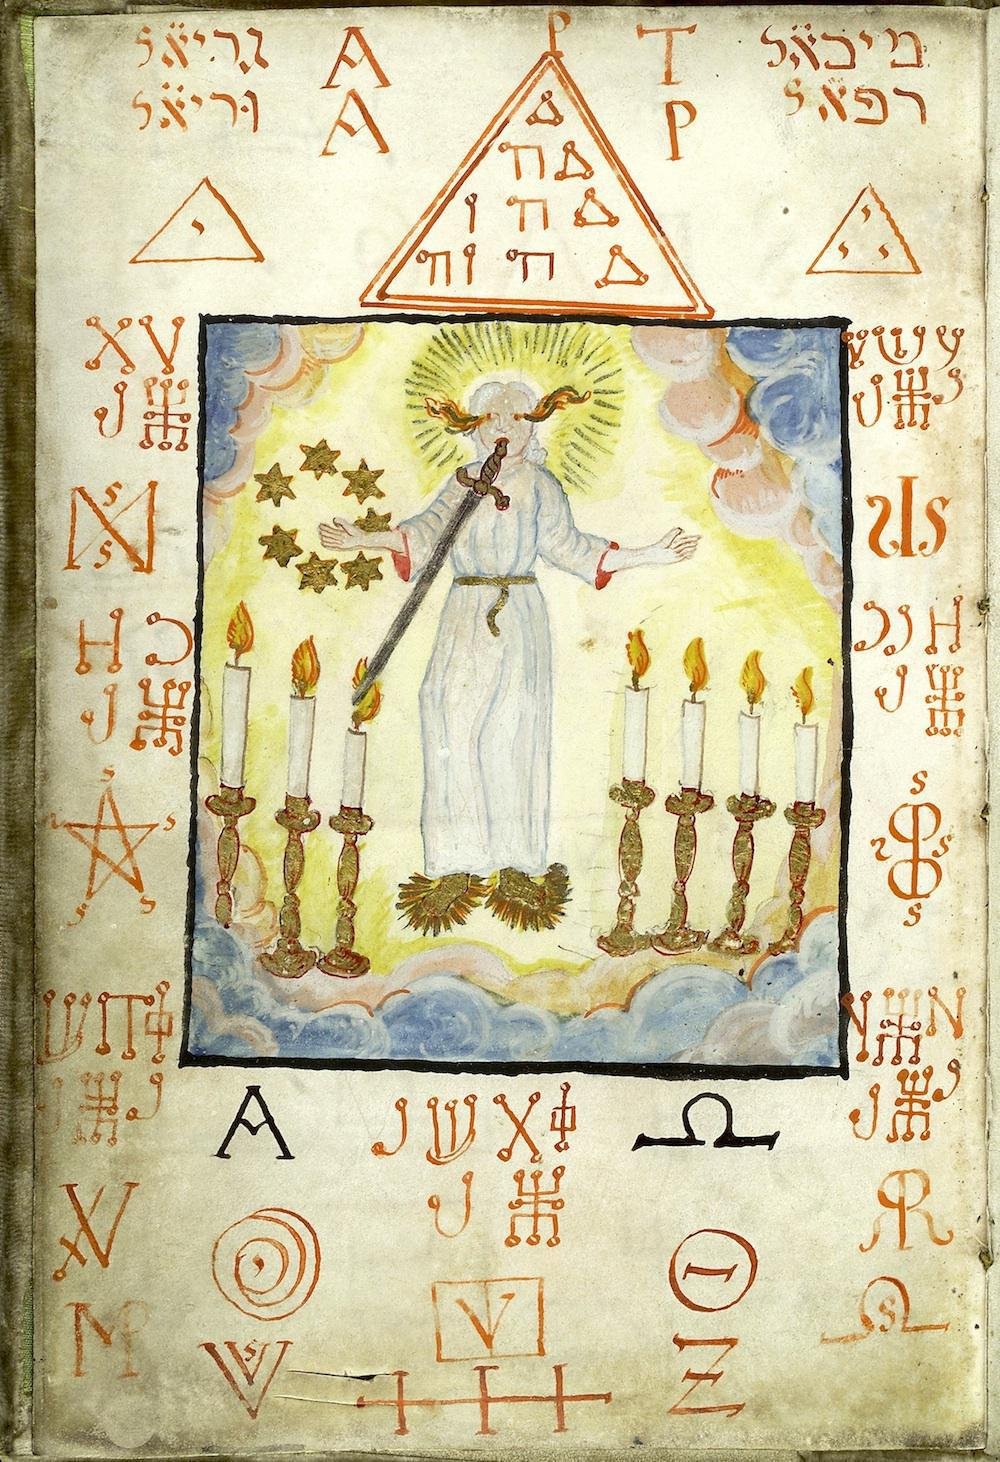 Ilustração pode ser representação de um arcanjo ou do próprio Cristo. (Fonte: Slate)